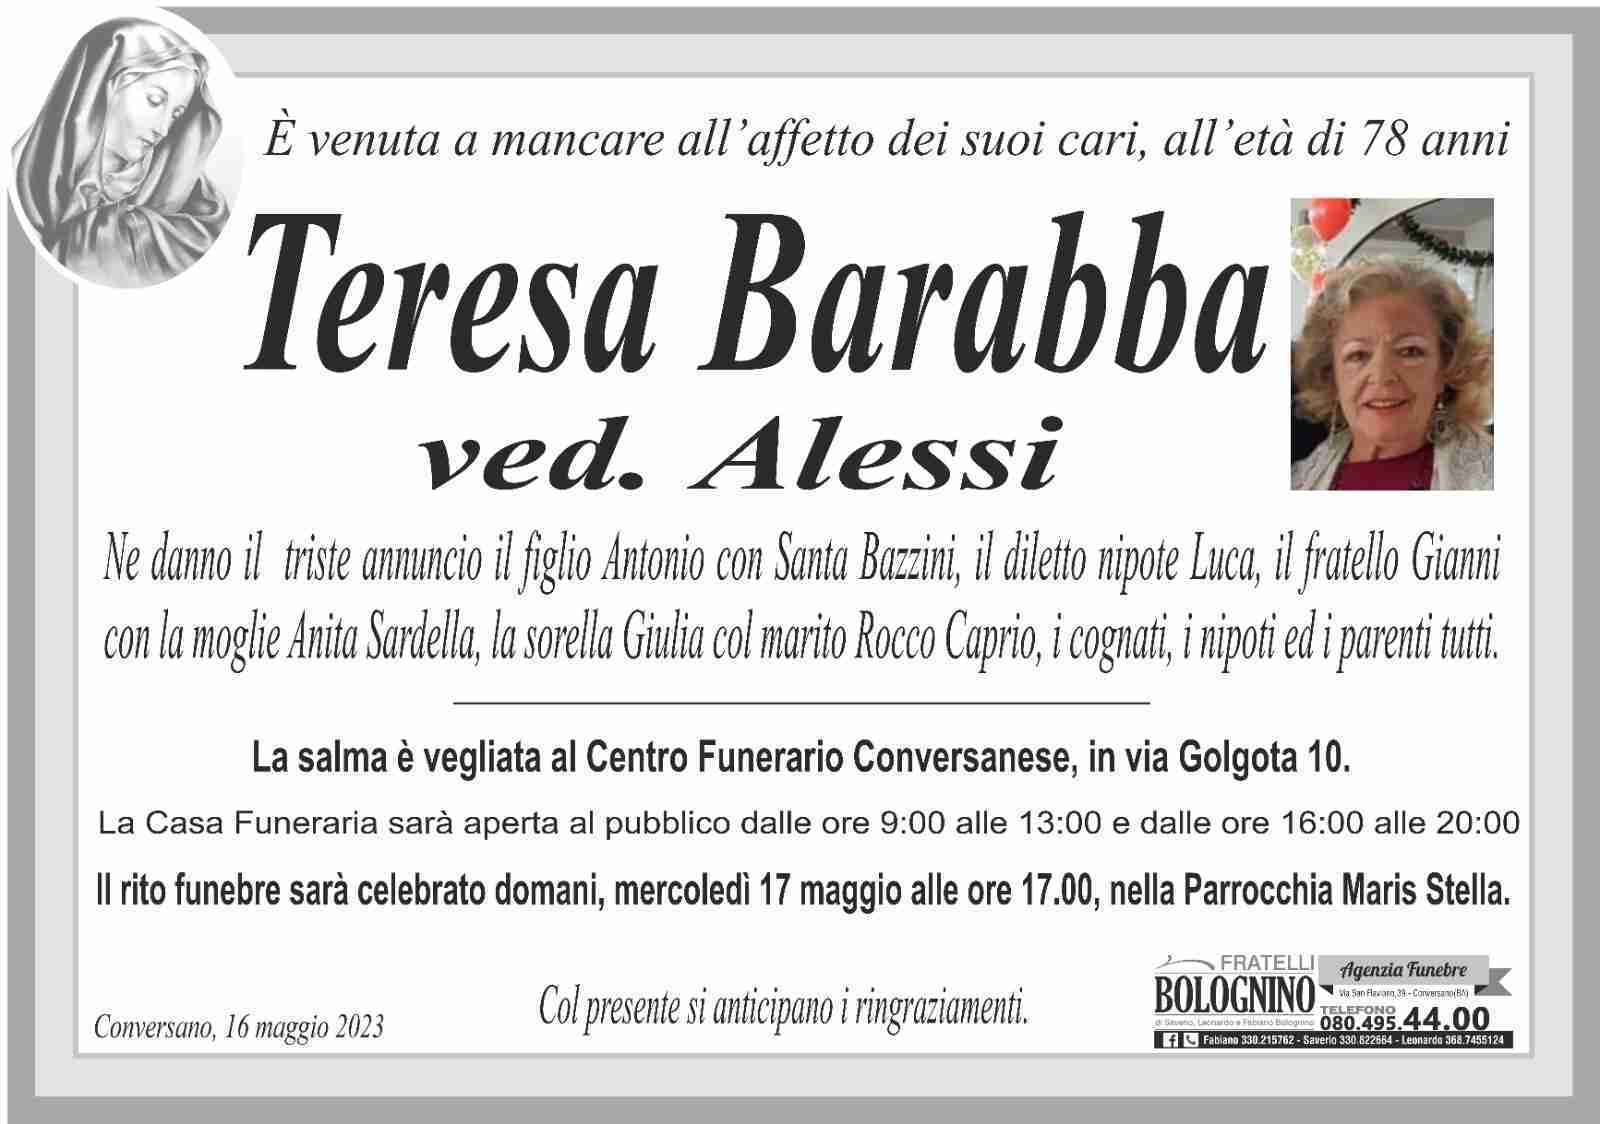 Teresa Barabba